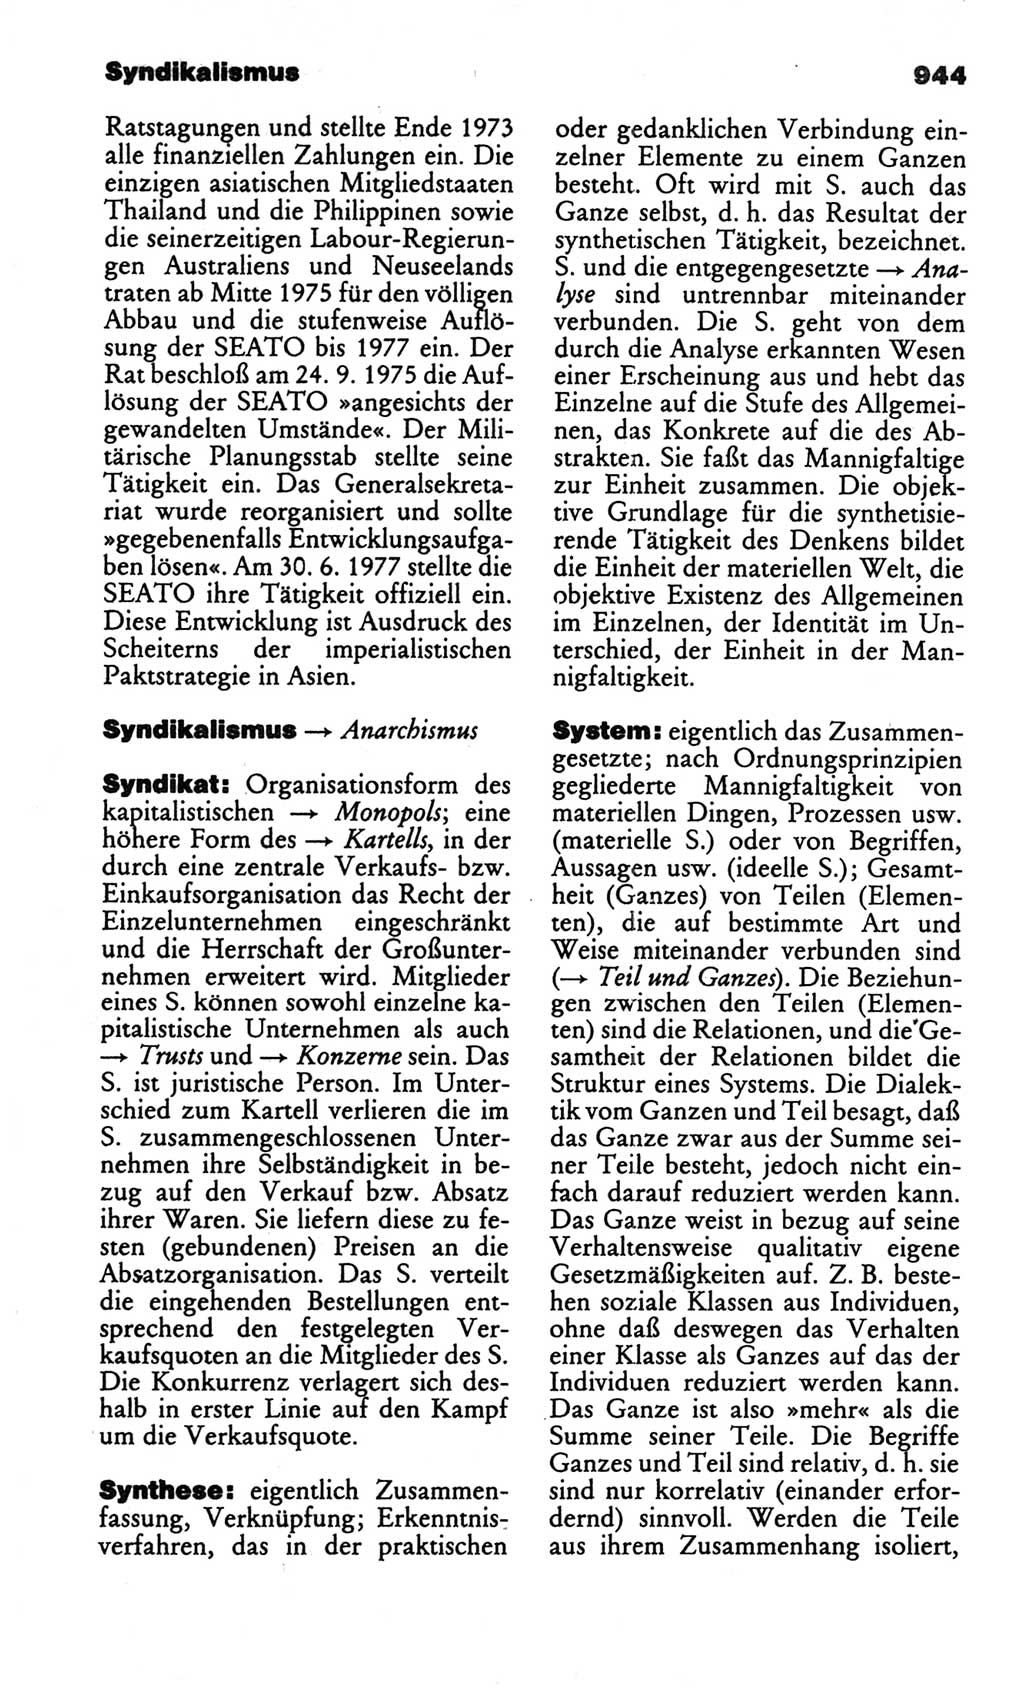 Kleines politisches Wörterbuch [Deutsche Demokratische Republik (DDR)] 1986, Seite 944 (Kl. pol. Wb. DDR 1986, S. 944)